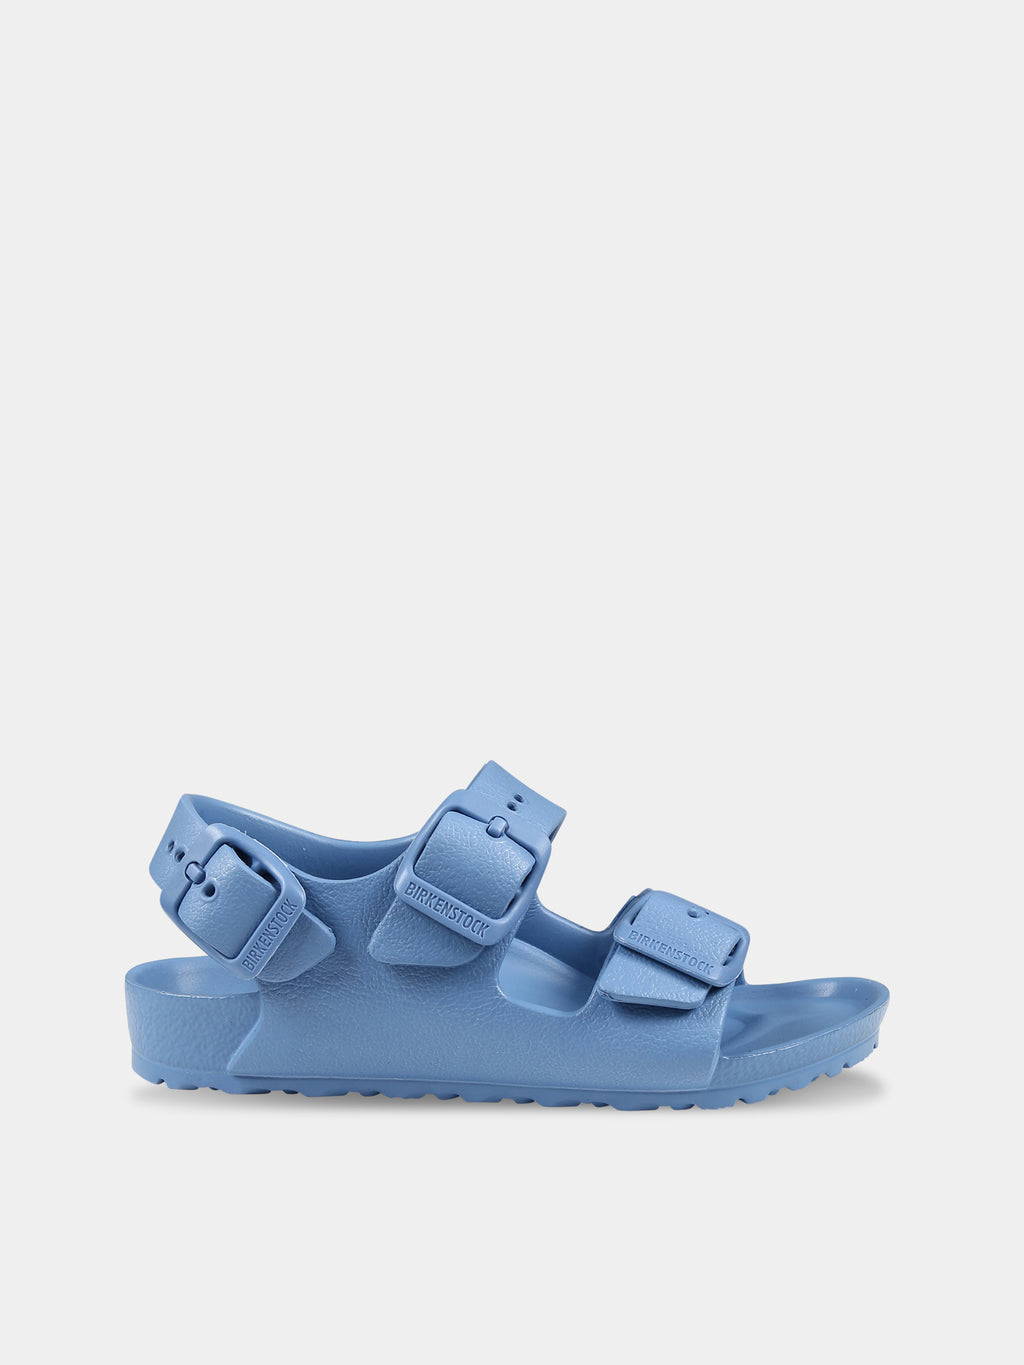 Sandales Milano Eva bleu clair pour enfant avec logo